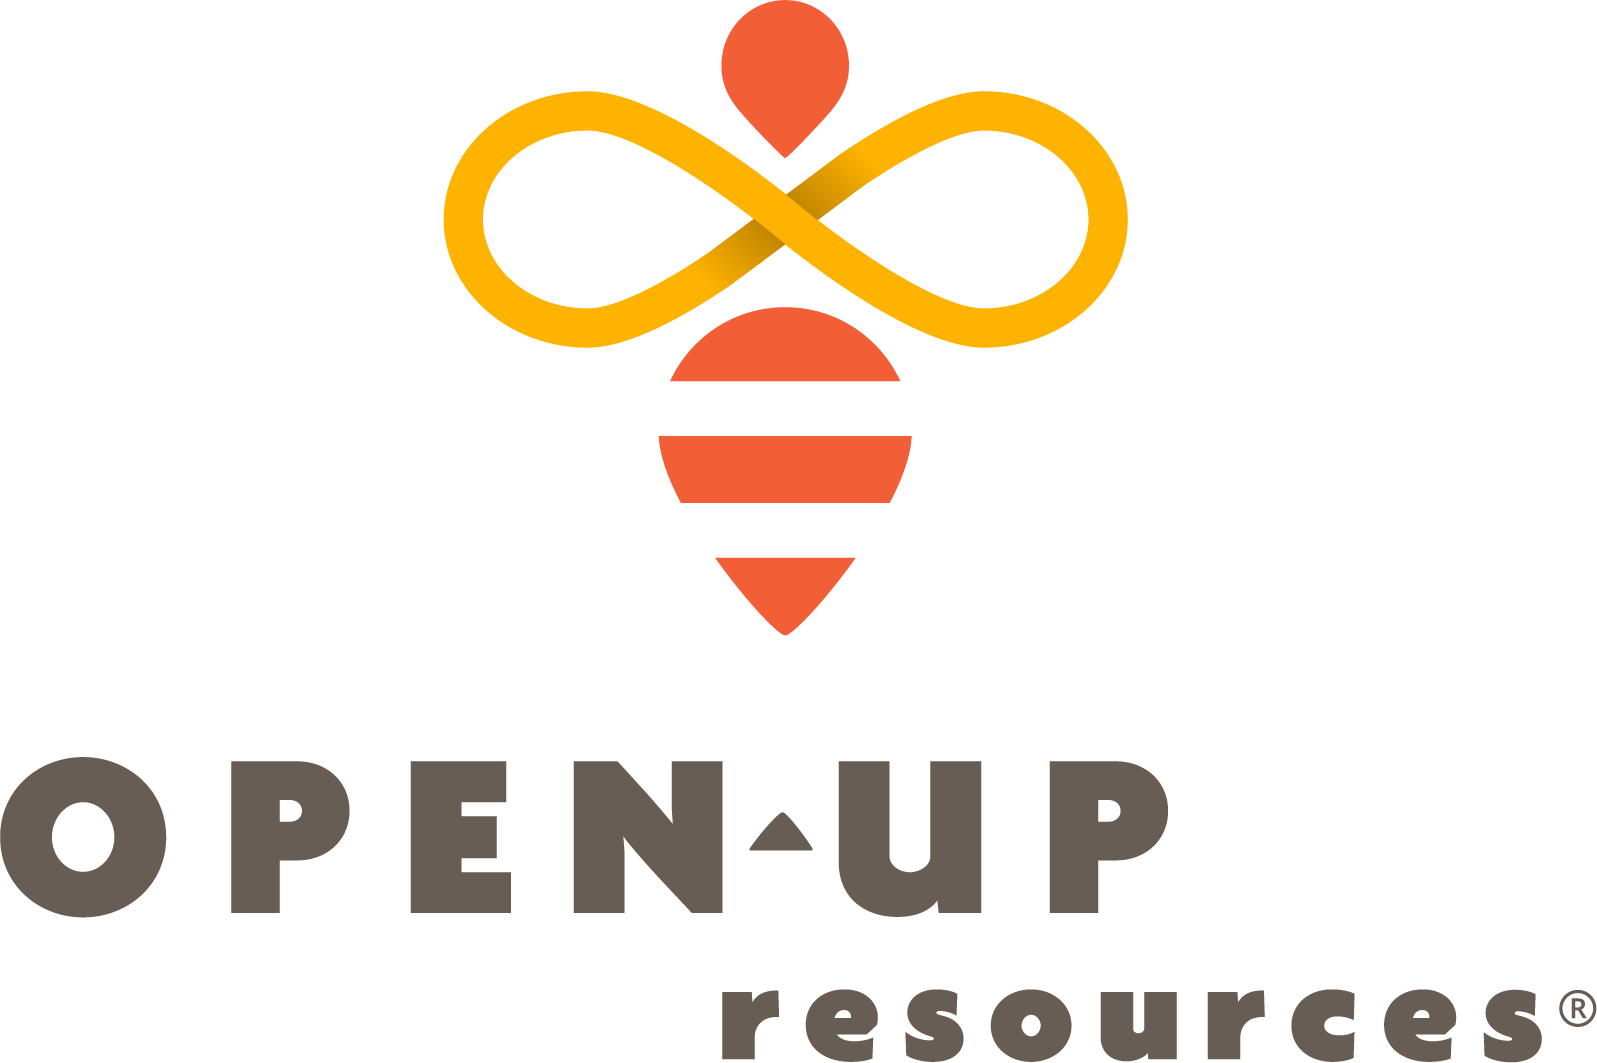 open up logo